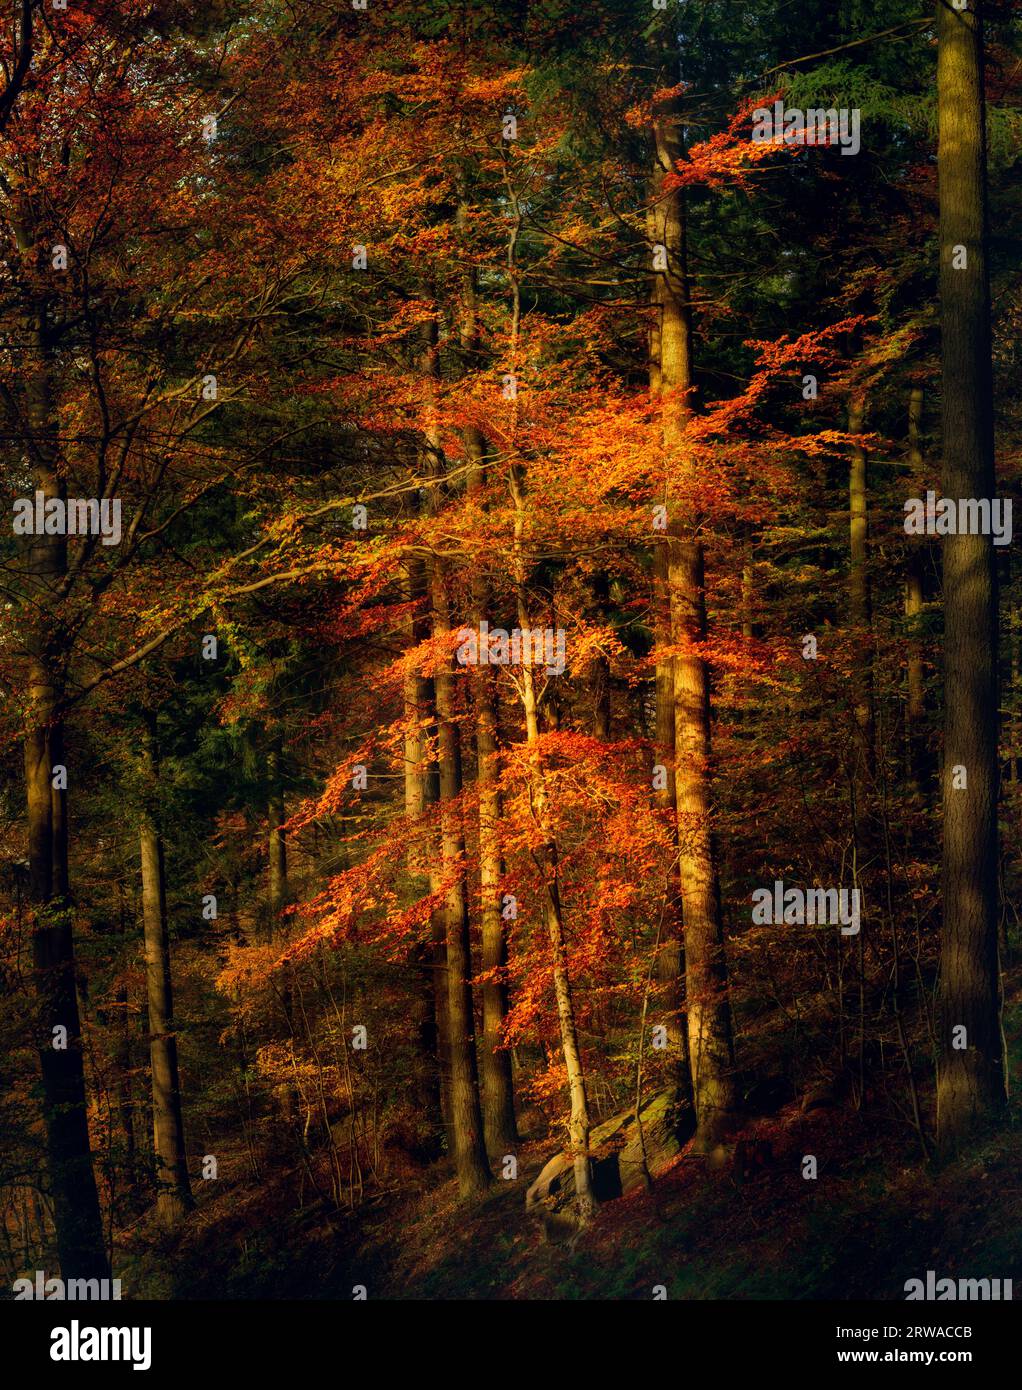 Arbre illuminé dans la lumière chaude du soir de l'automne se détachant dans les bois sombres, avec une couleur orange vibrante Banque D'Images